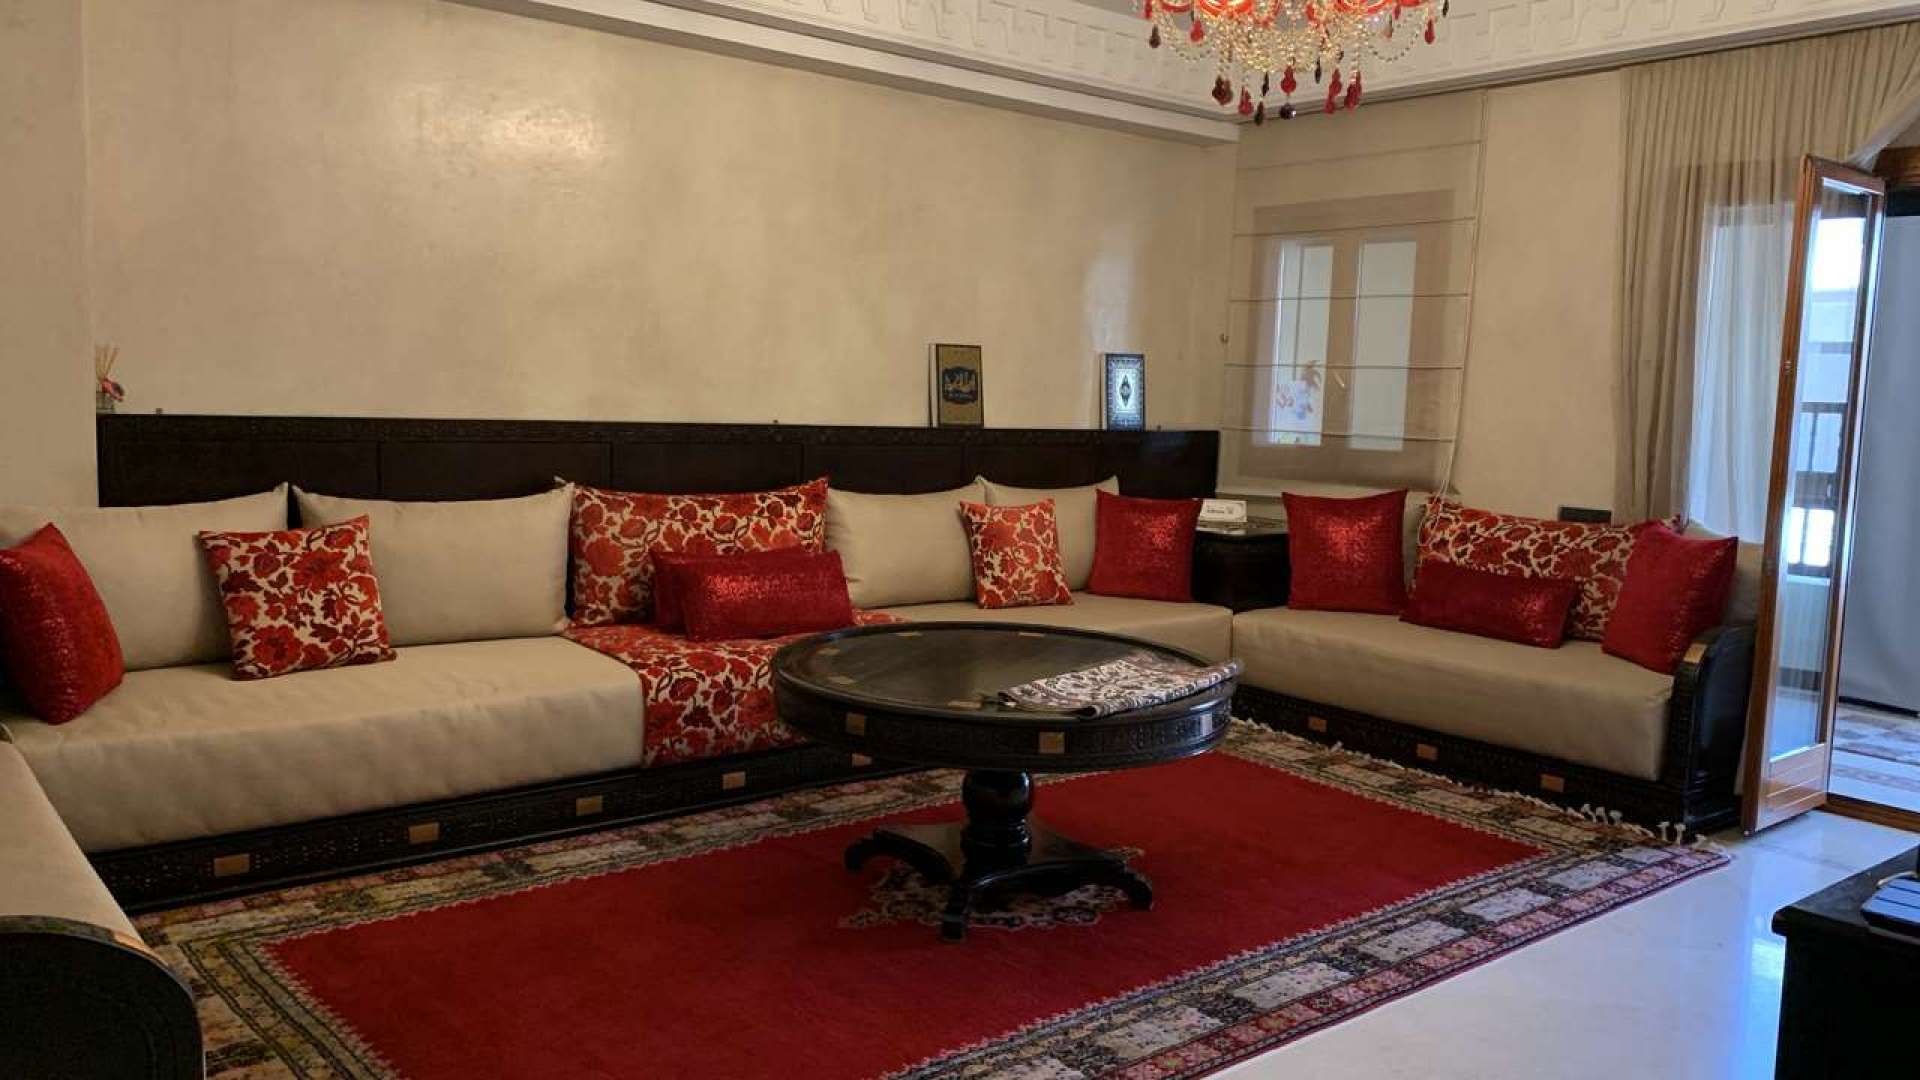 Location longue durée ,Appartement,Magnifique appartement VIDE T3 au centre de Guéliz-Plazza-Marrakech,Marrakech,Guéliz